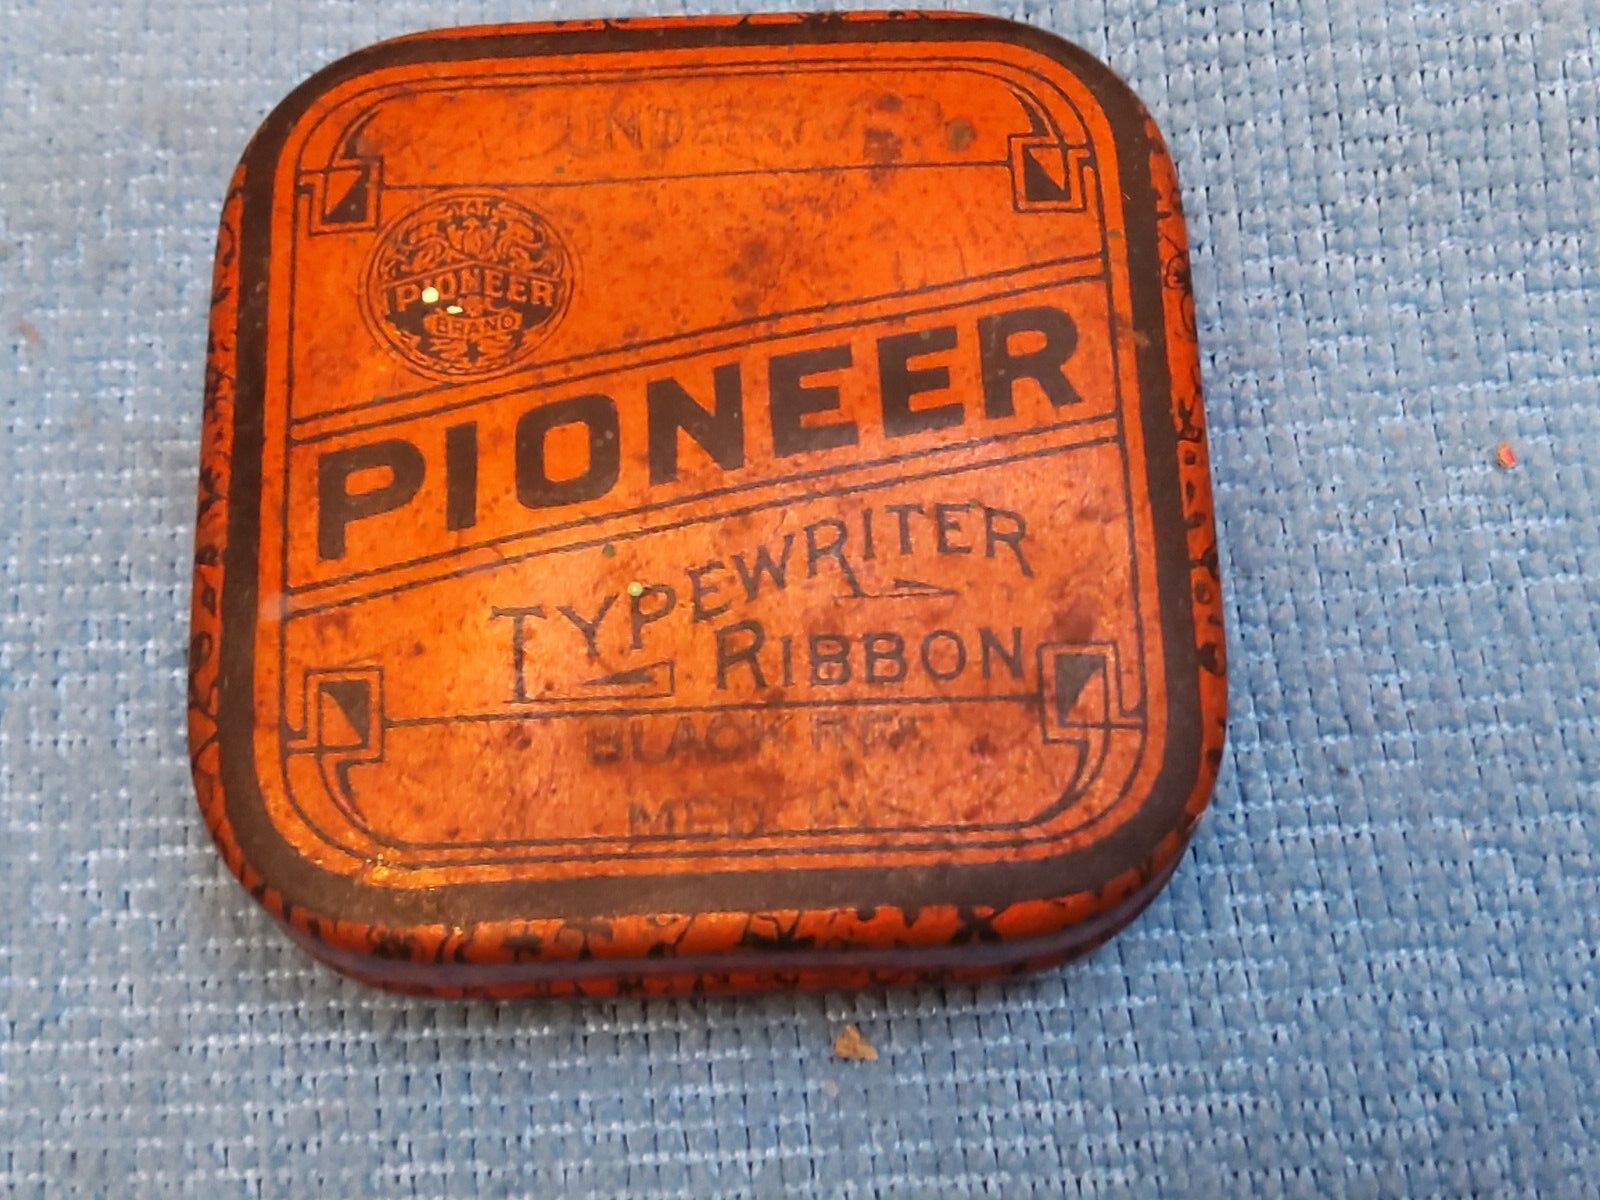 VINTAGE PIONEER TYPEWRITER RIBBON TIN ROCHESTER NY  EMPTY ORANGE / BLACK